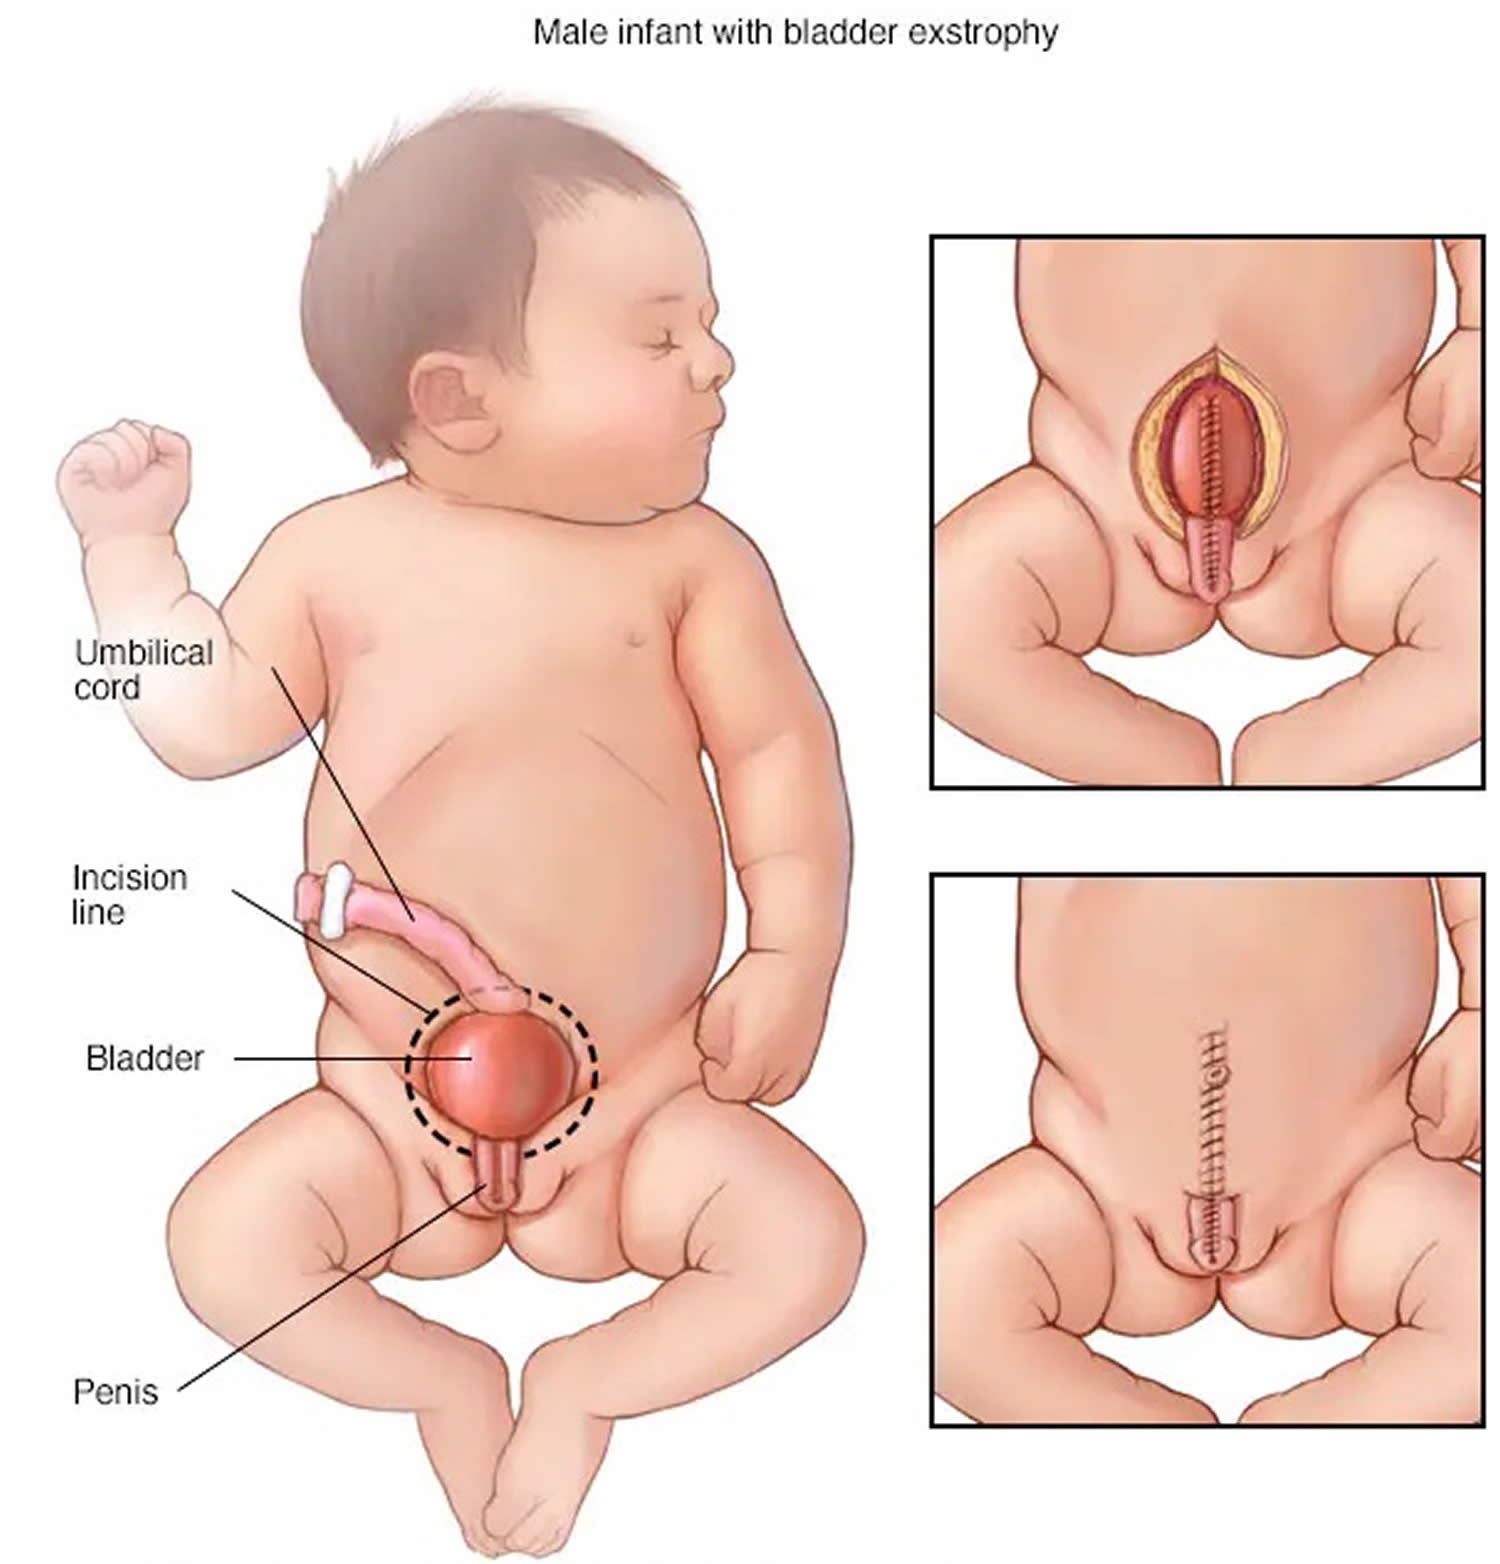 Cloacal bladder exstrophy male infant